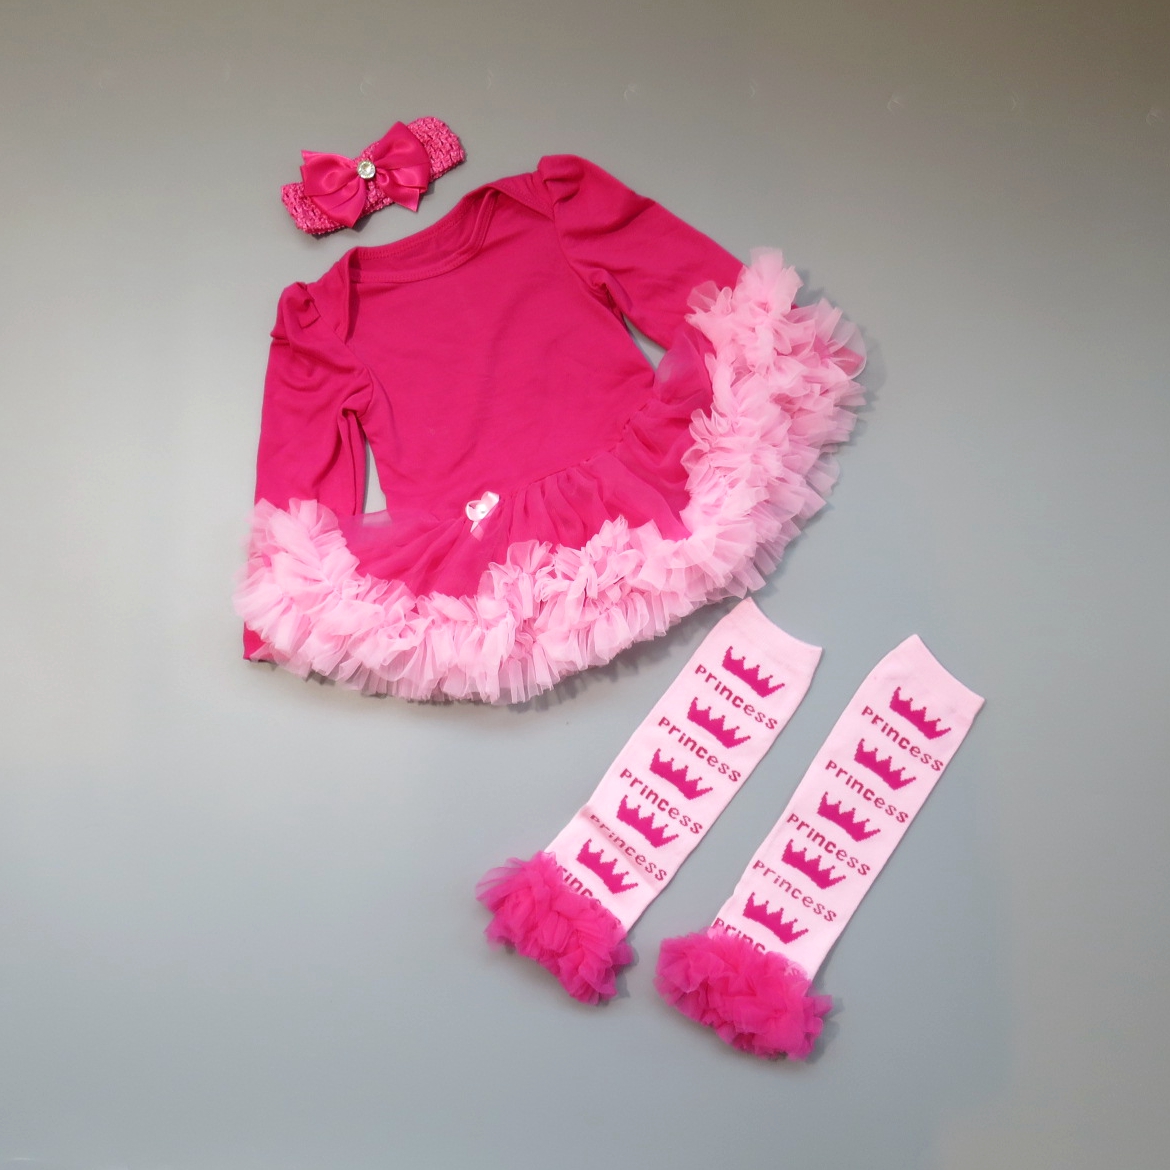 日安朵朵 女嬰精緻雪紡蓬蓬裙連身衣禮盒組 桃紅芭比 Barbie (網紗襪套 長袖蓬裙連身衣) (6-12個月)